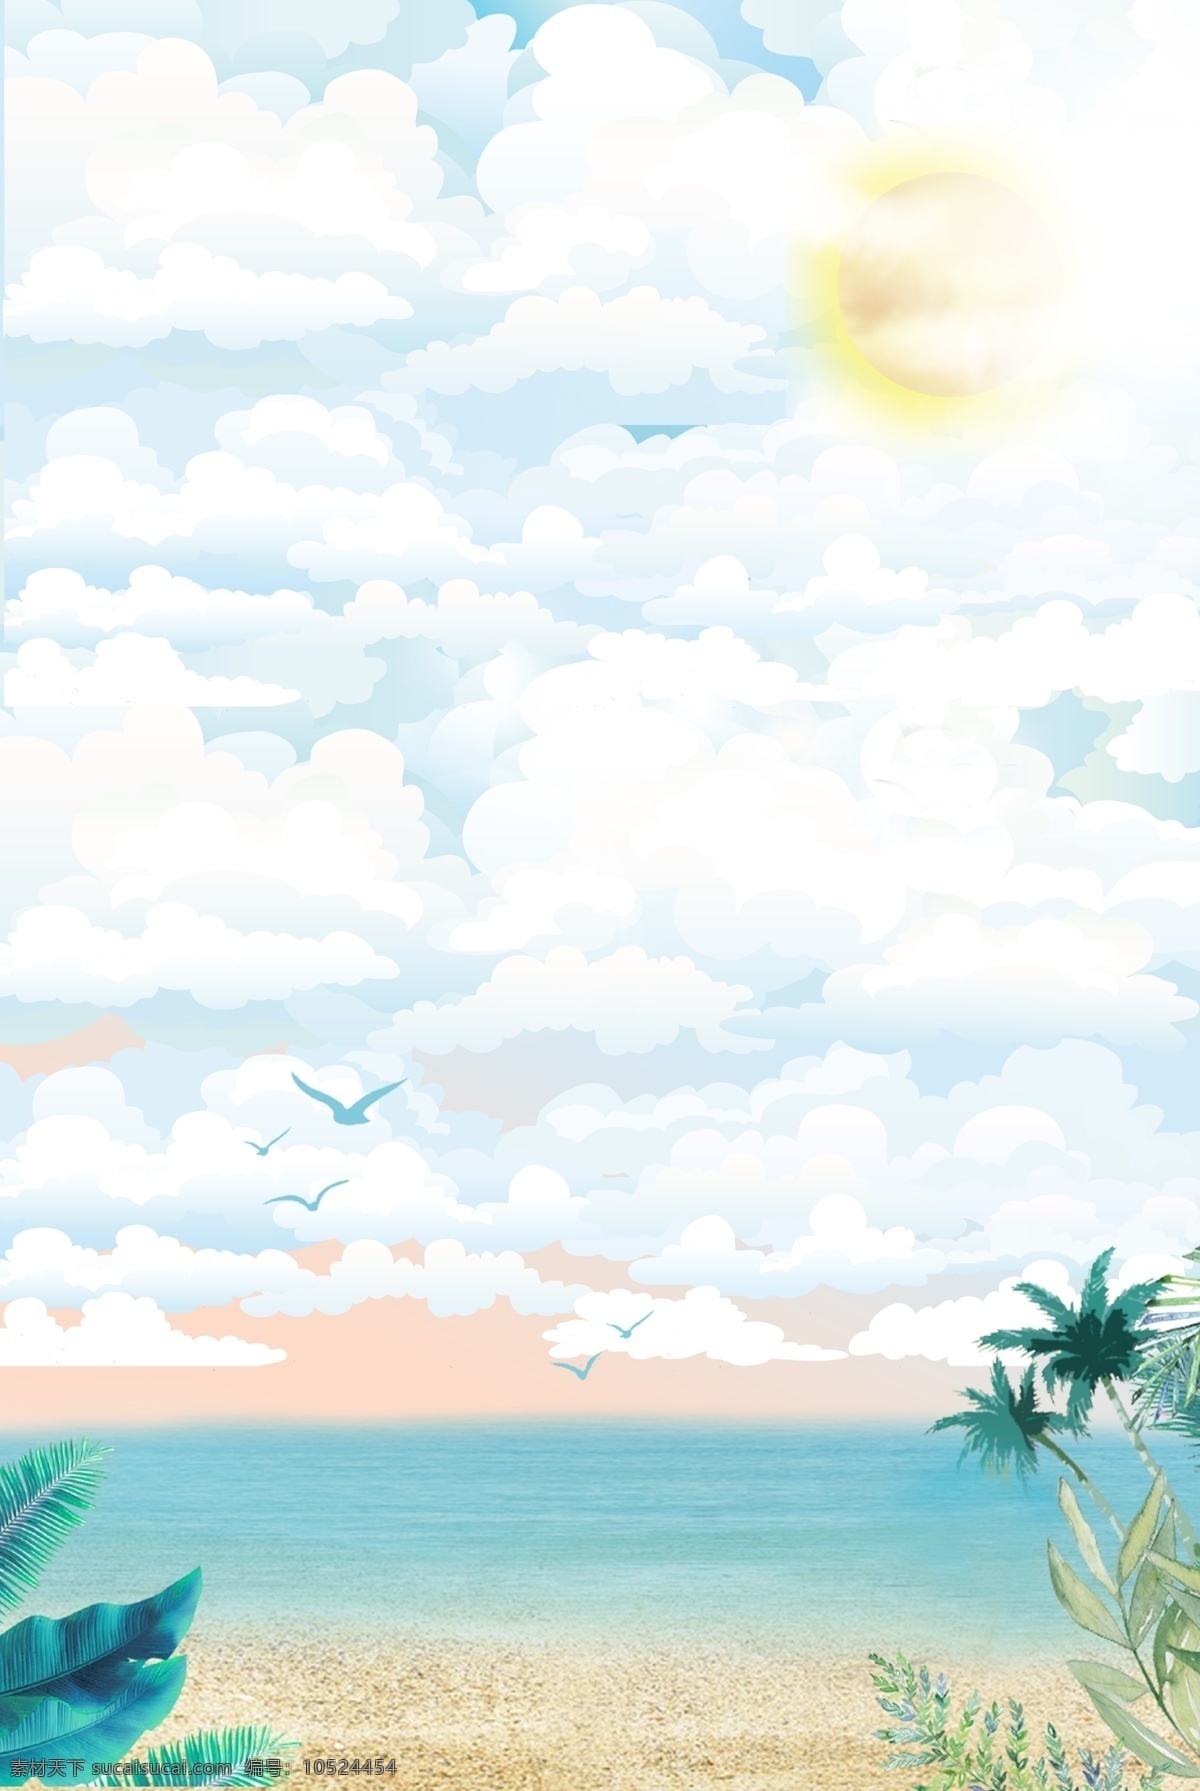 清新 简约 海洋 沙滩 自然风景 海报 背景 手绘 天空 云彩 椰树 阳光